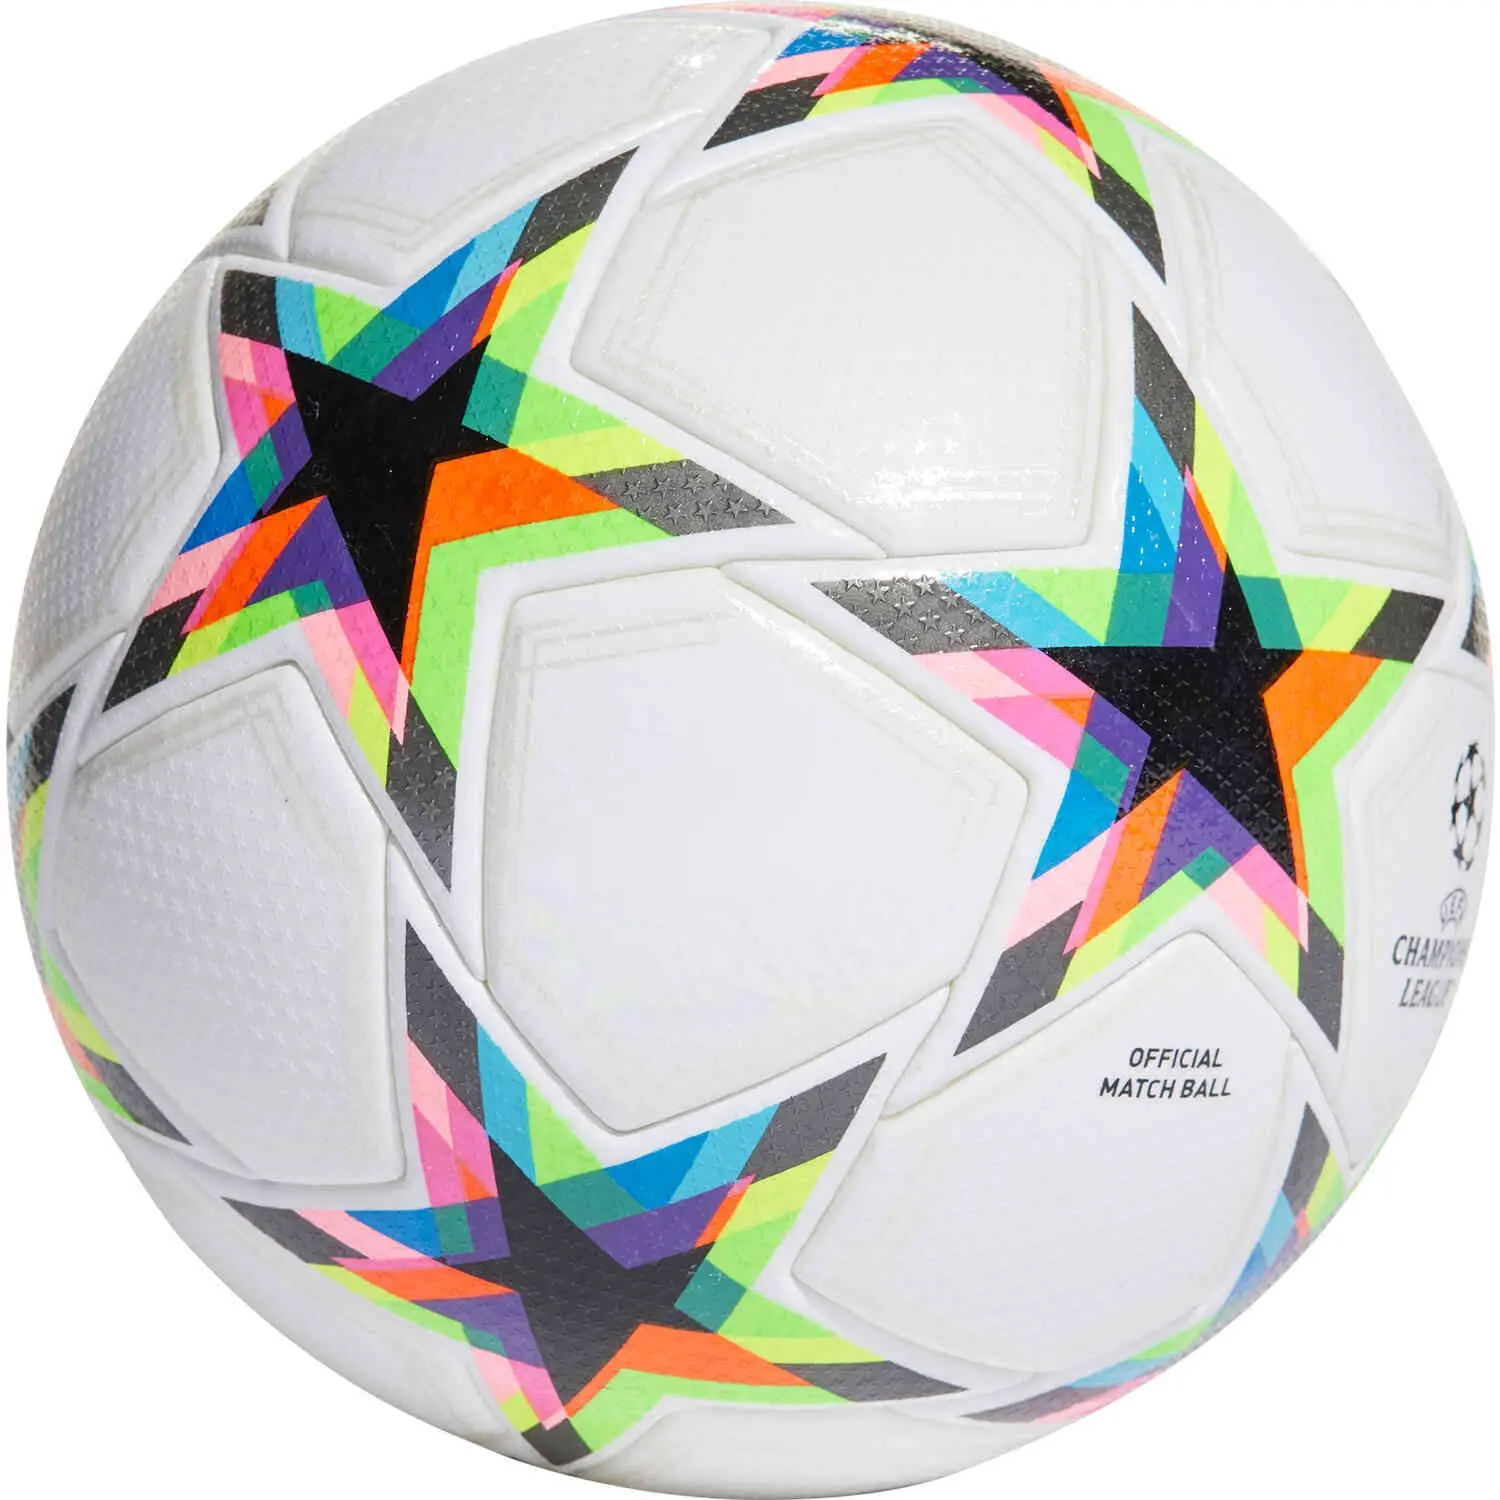 Футбольный мяч на заказ, профессиональный футбольный мяч, обслуживание, размер 5, искусственная кожа, высокое качество, сделано в сиалкоте, Пакистан